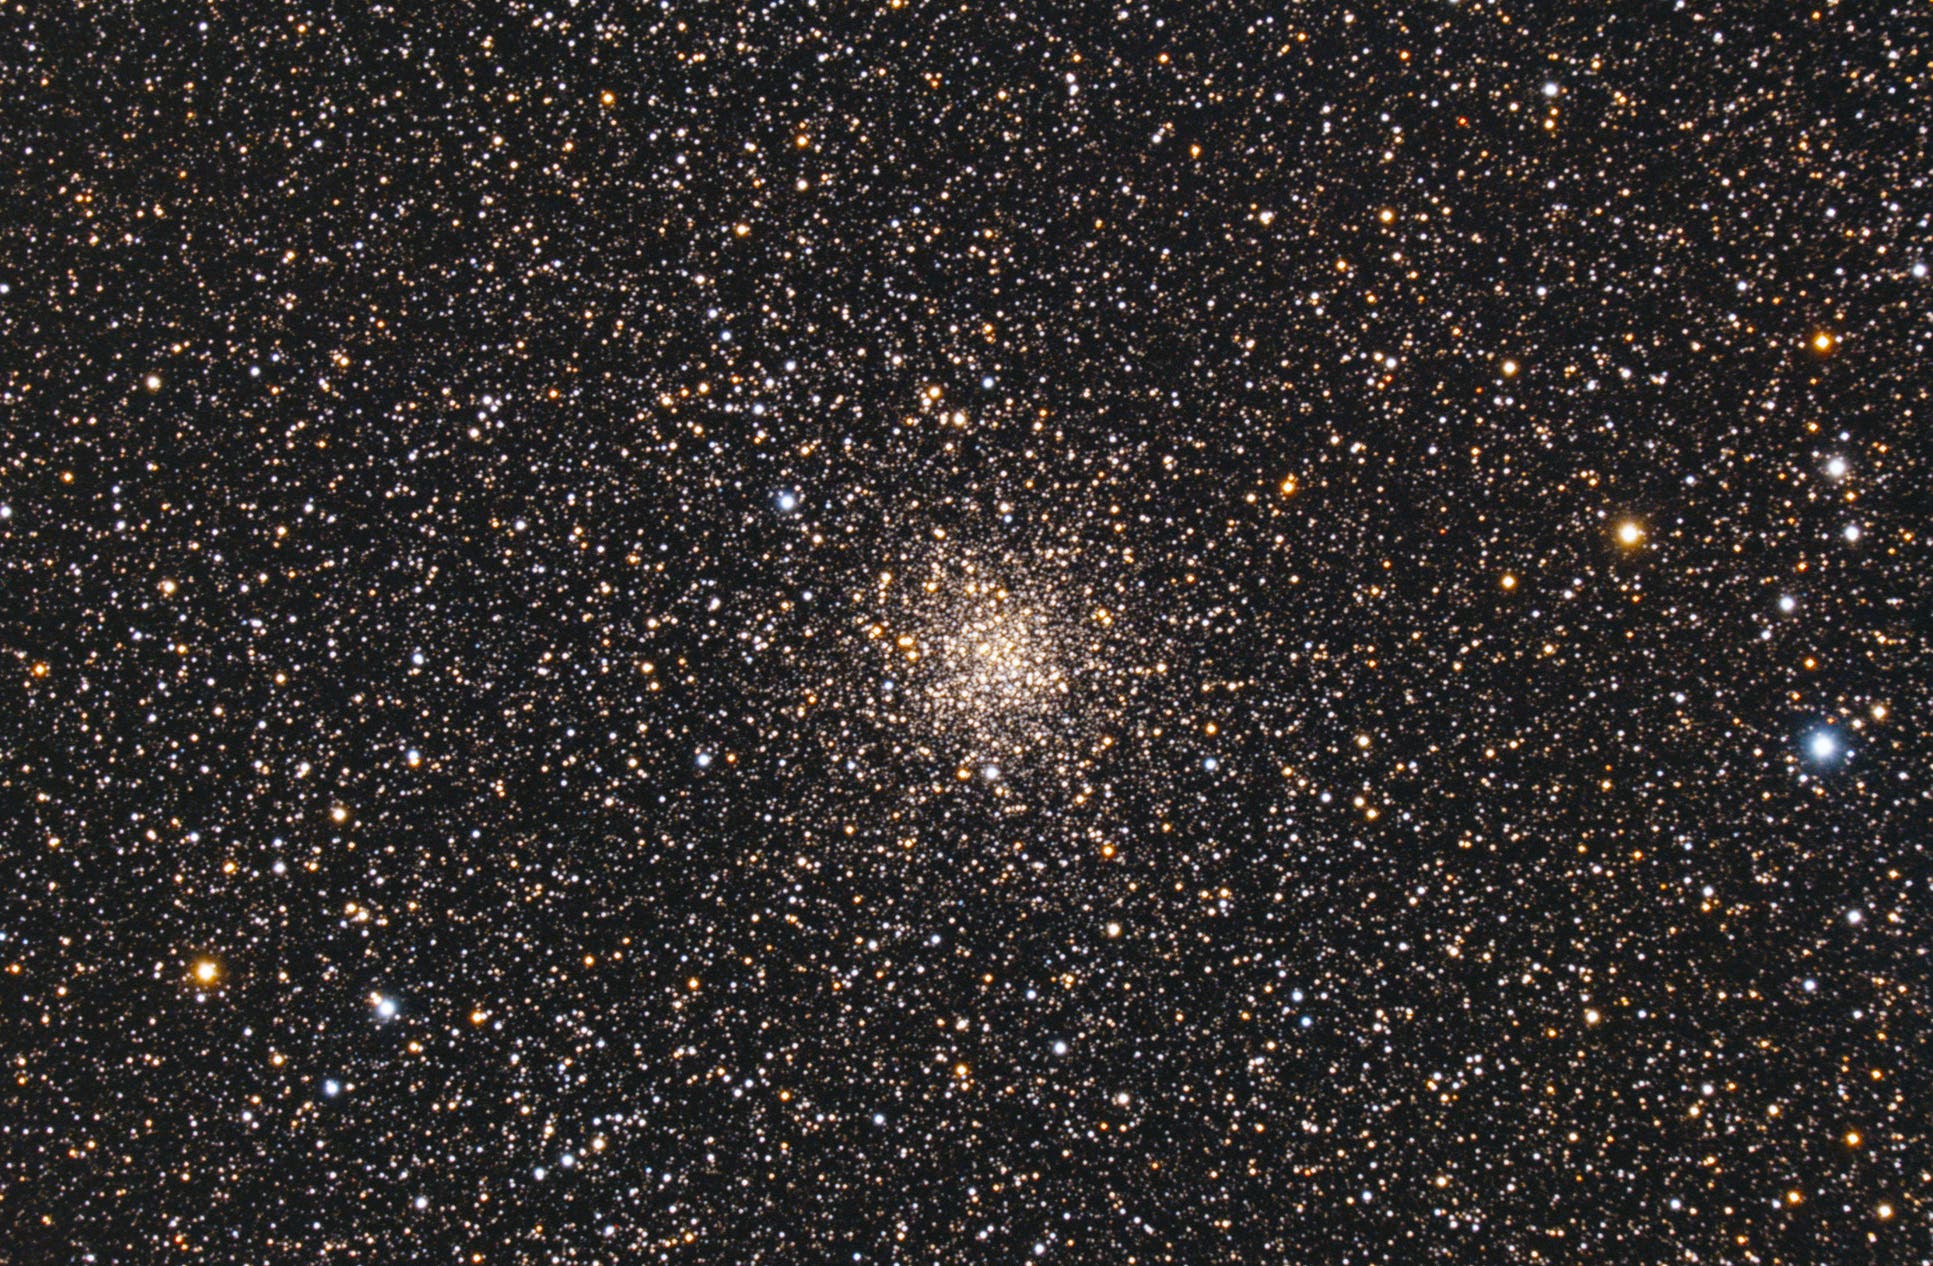 Kugelsternhaufen Messier 71